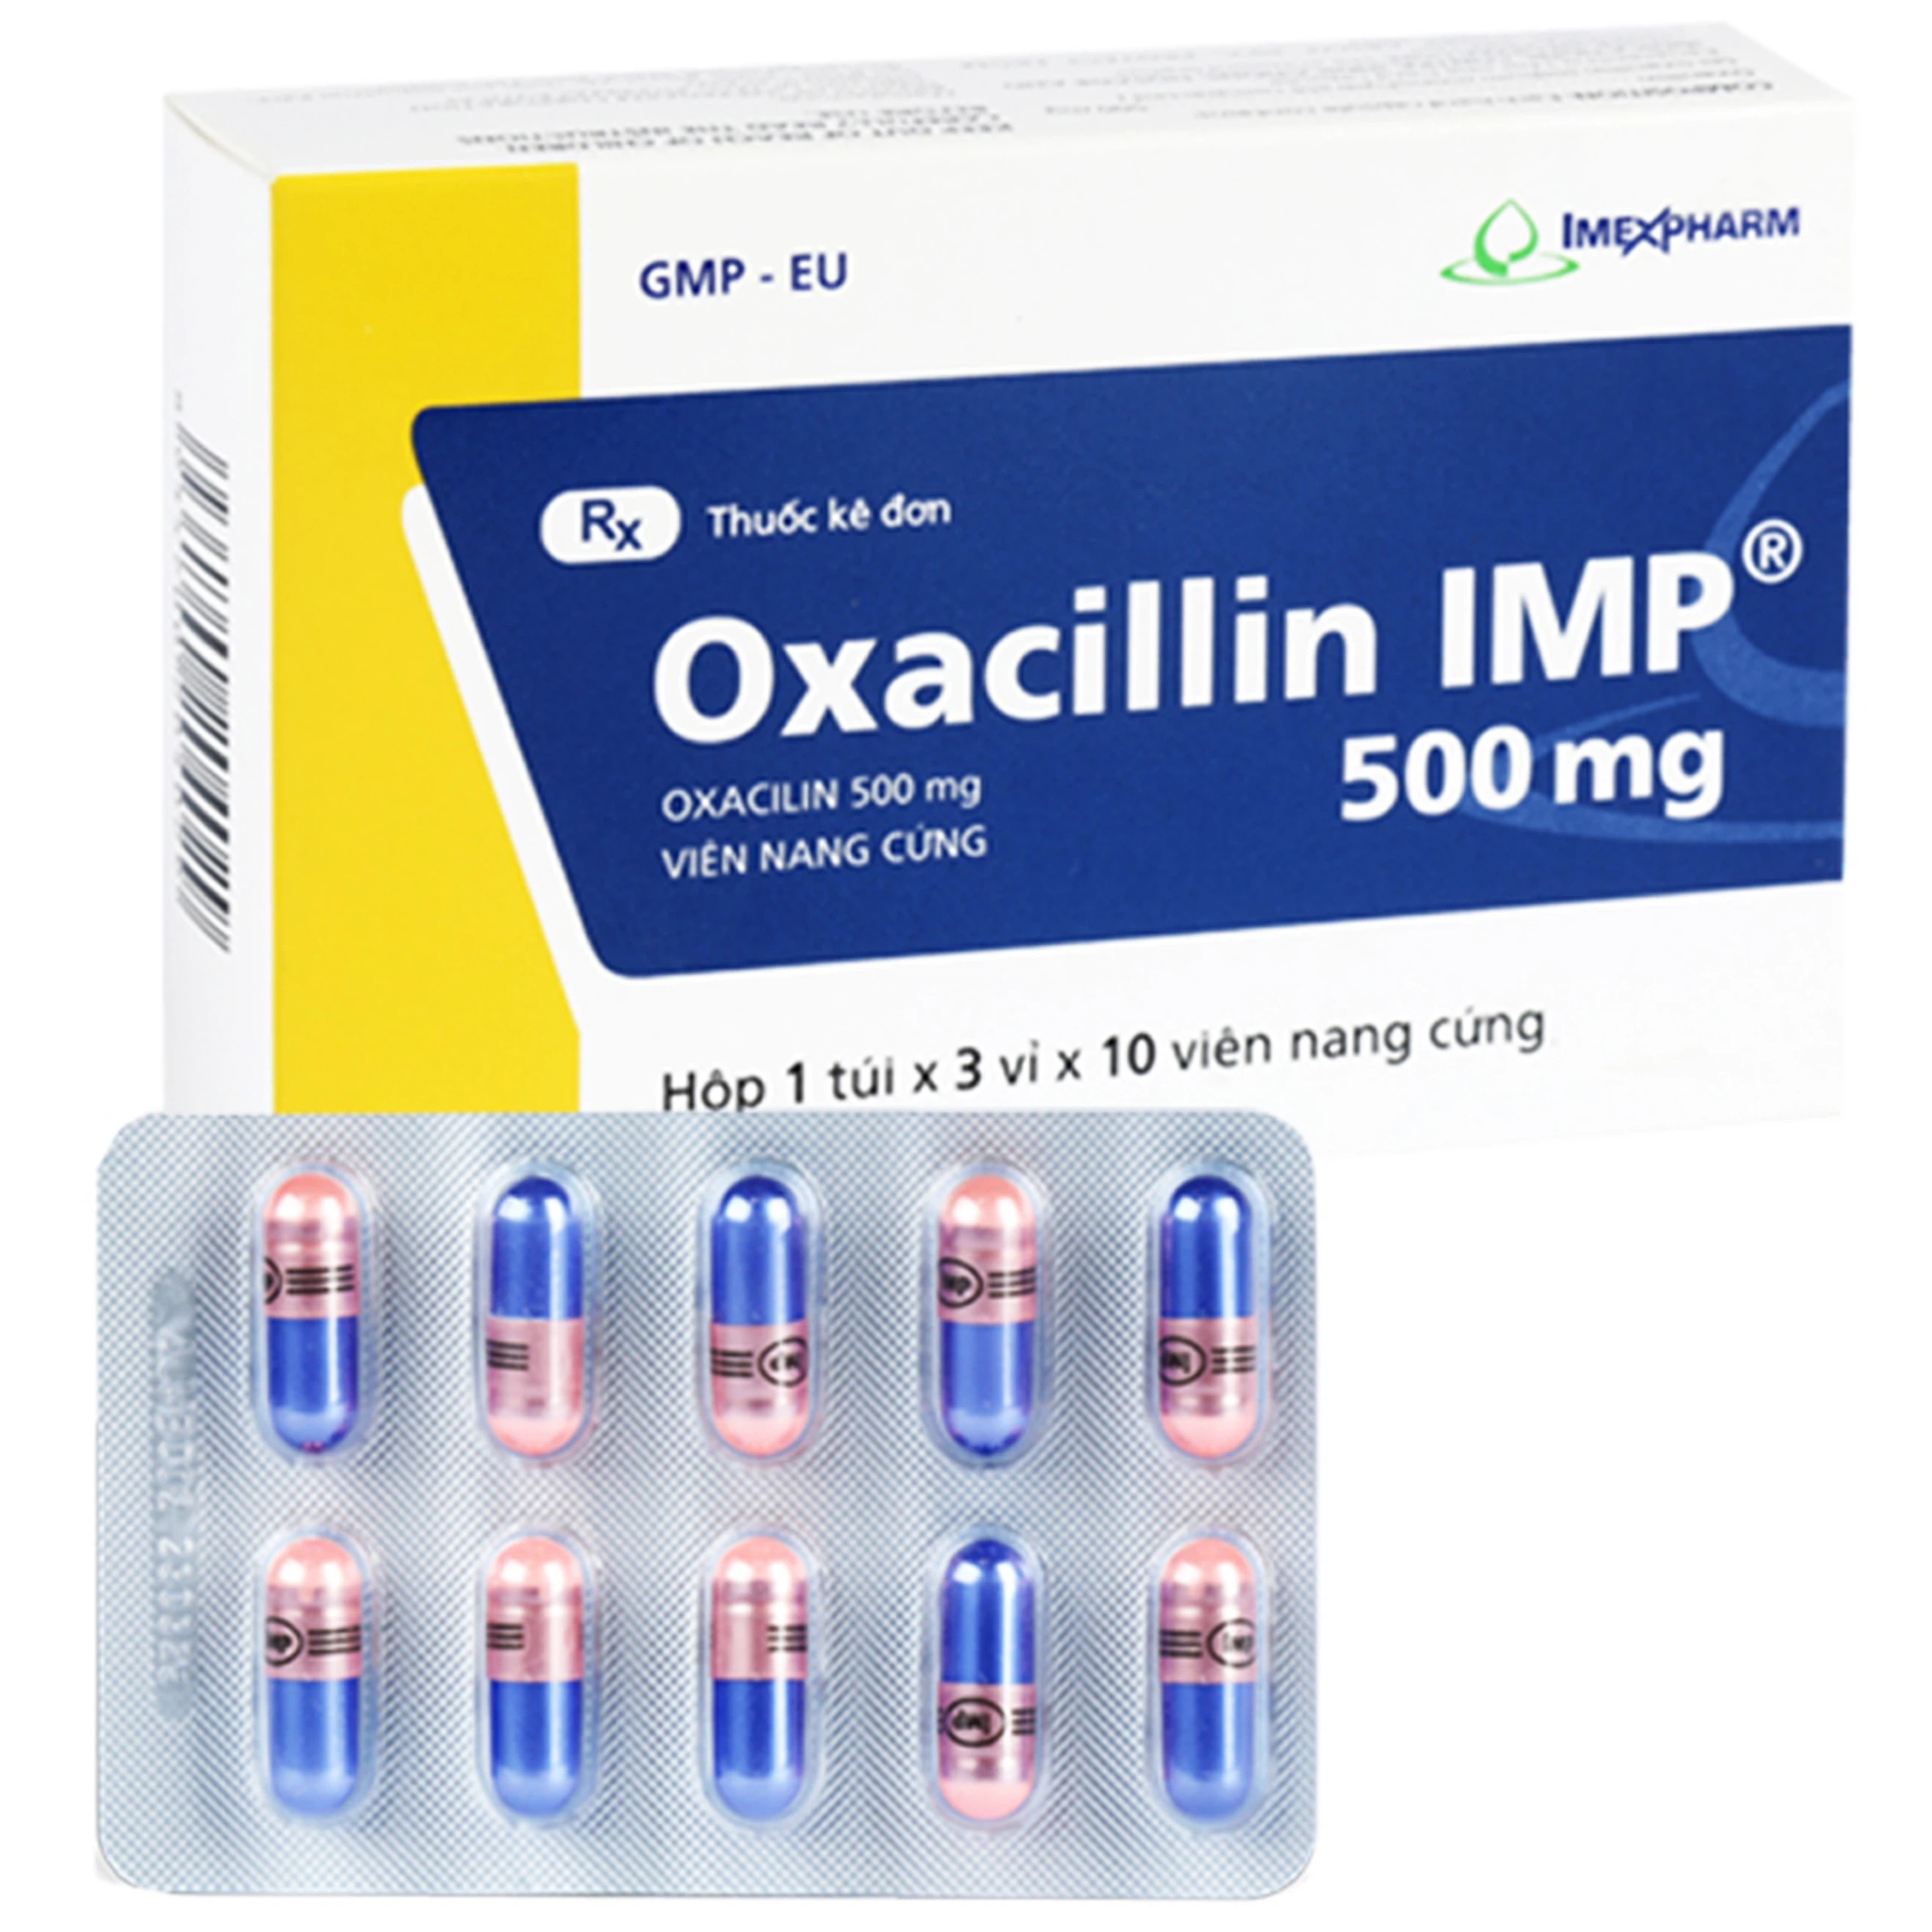 Thuốc Oxacillin IMP 500mg Imexpharm điều trị nhiễm khuẩn (3 vỉ x 10 viên)